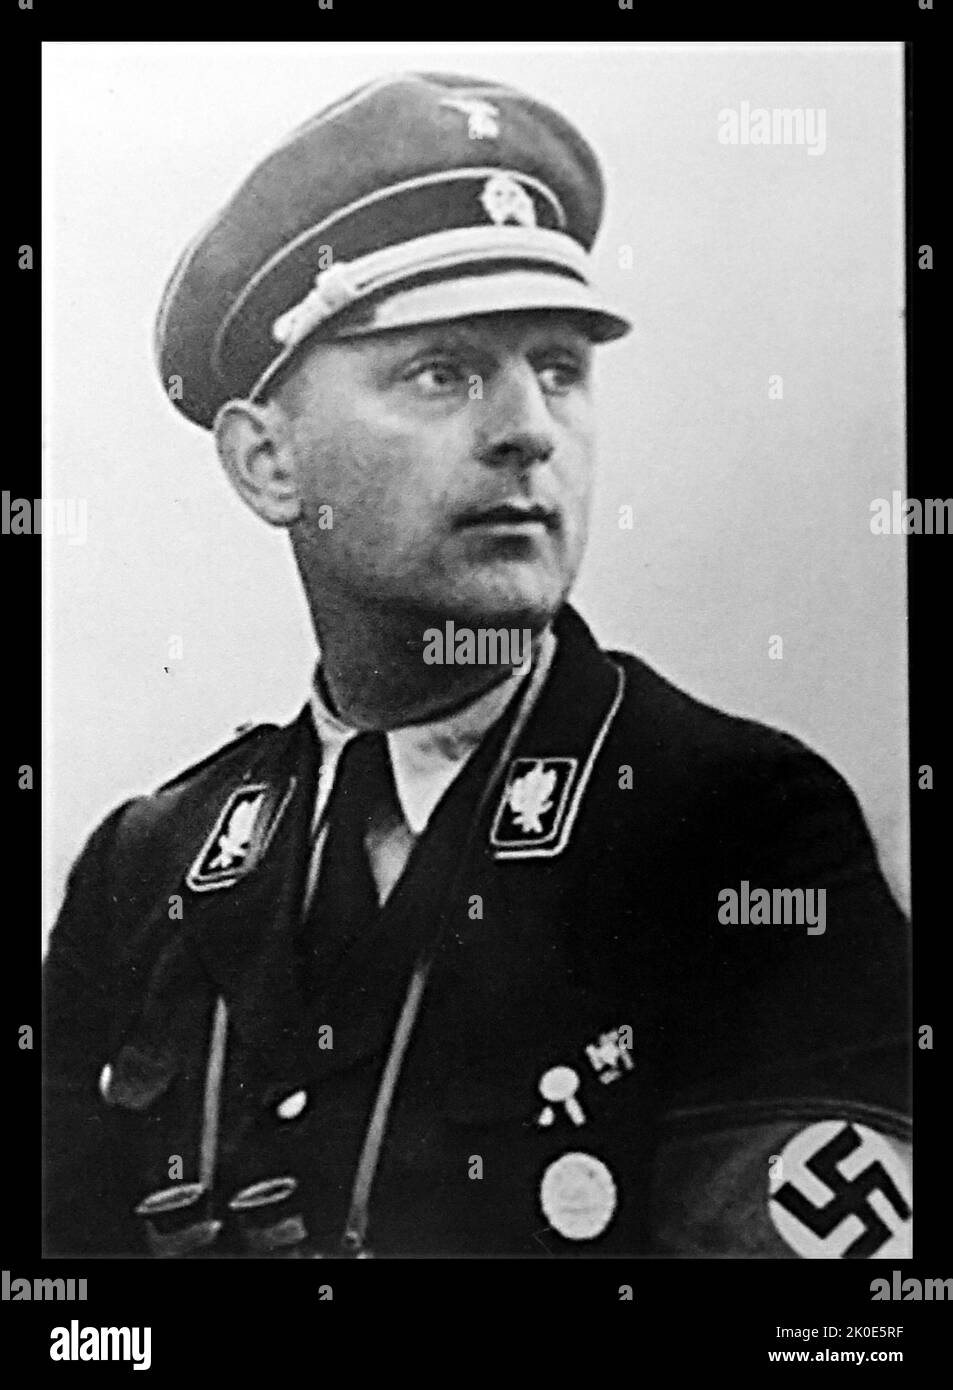 Kurt Daluege (1897 - 1946); Chef der nationaluniformierten Ordnungspolizei des nationalsozialistischen Deutschlands. Nach dem Attentat von Reinhard Heydrich im Jahr 1942 diente er als stellvertretender Protektor für das Protektorat Böhmen und Mähren. Nach dem Ende des Zweiten Weltkriegs wurde er an die Tschechoslowakei ausgeliefert, 1946 vor Gericht gestellt, verurteilt und hingerichtet. Stockfoto